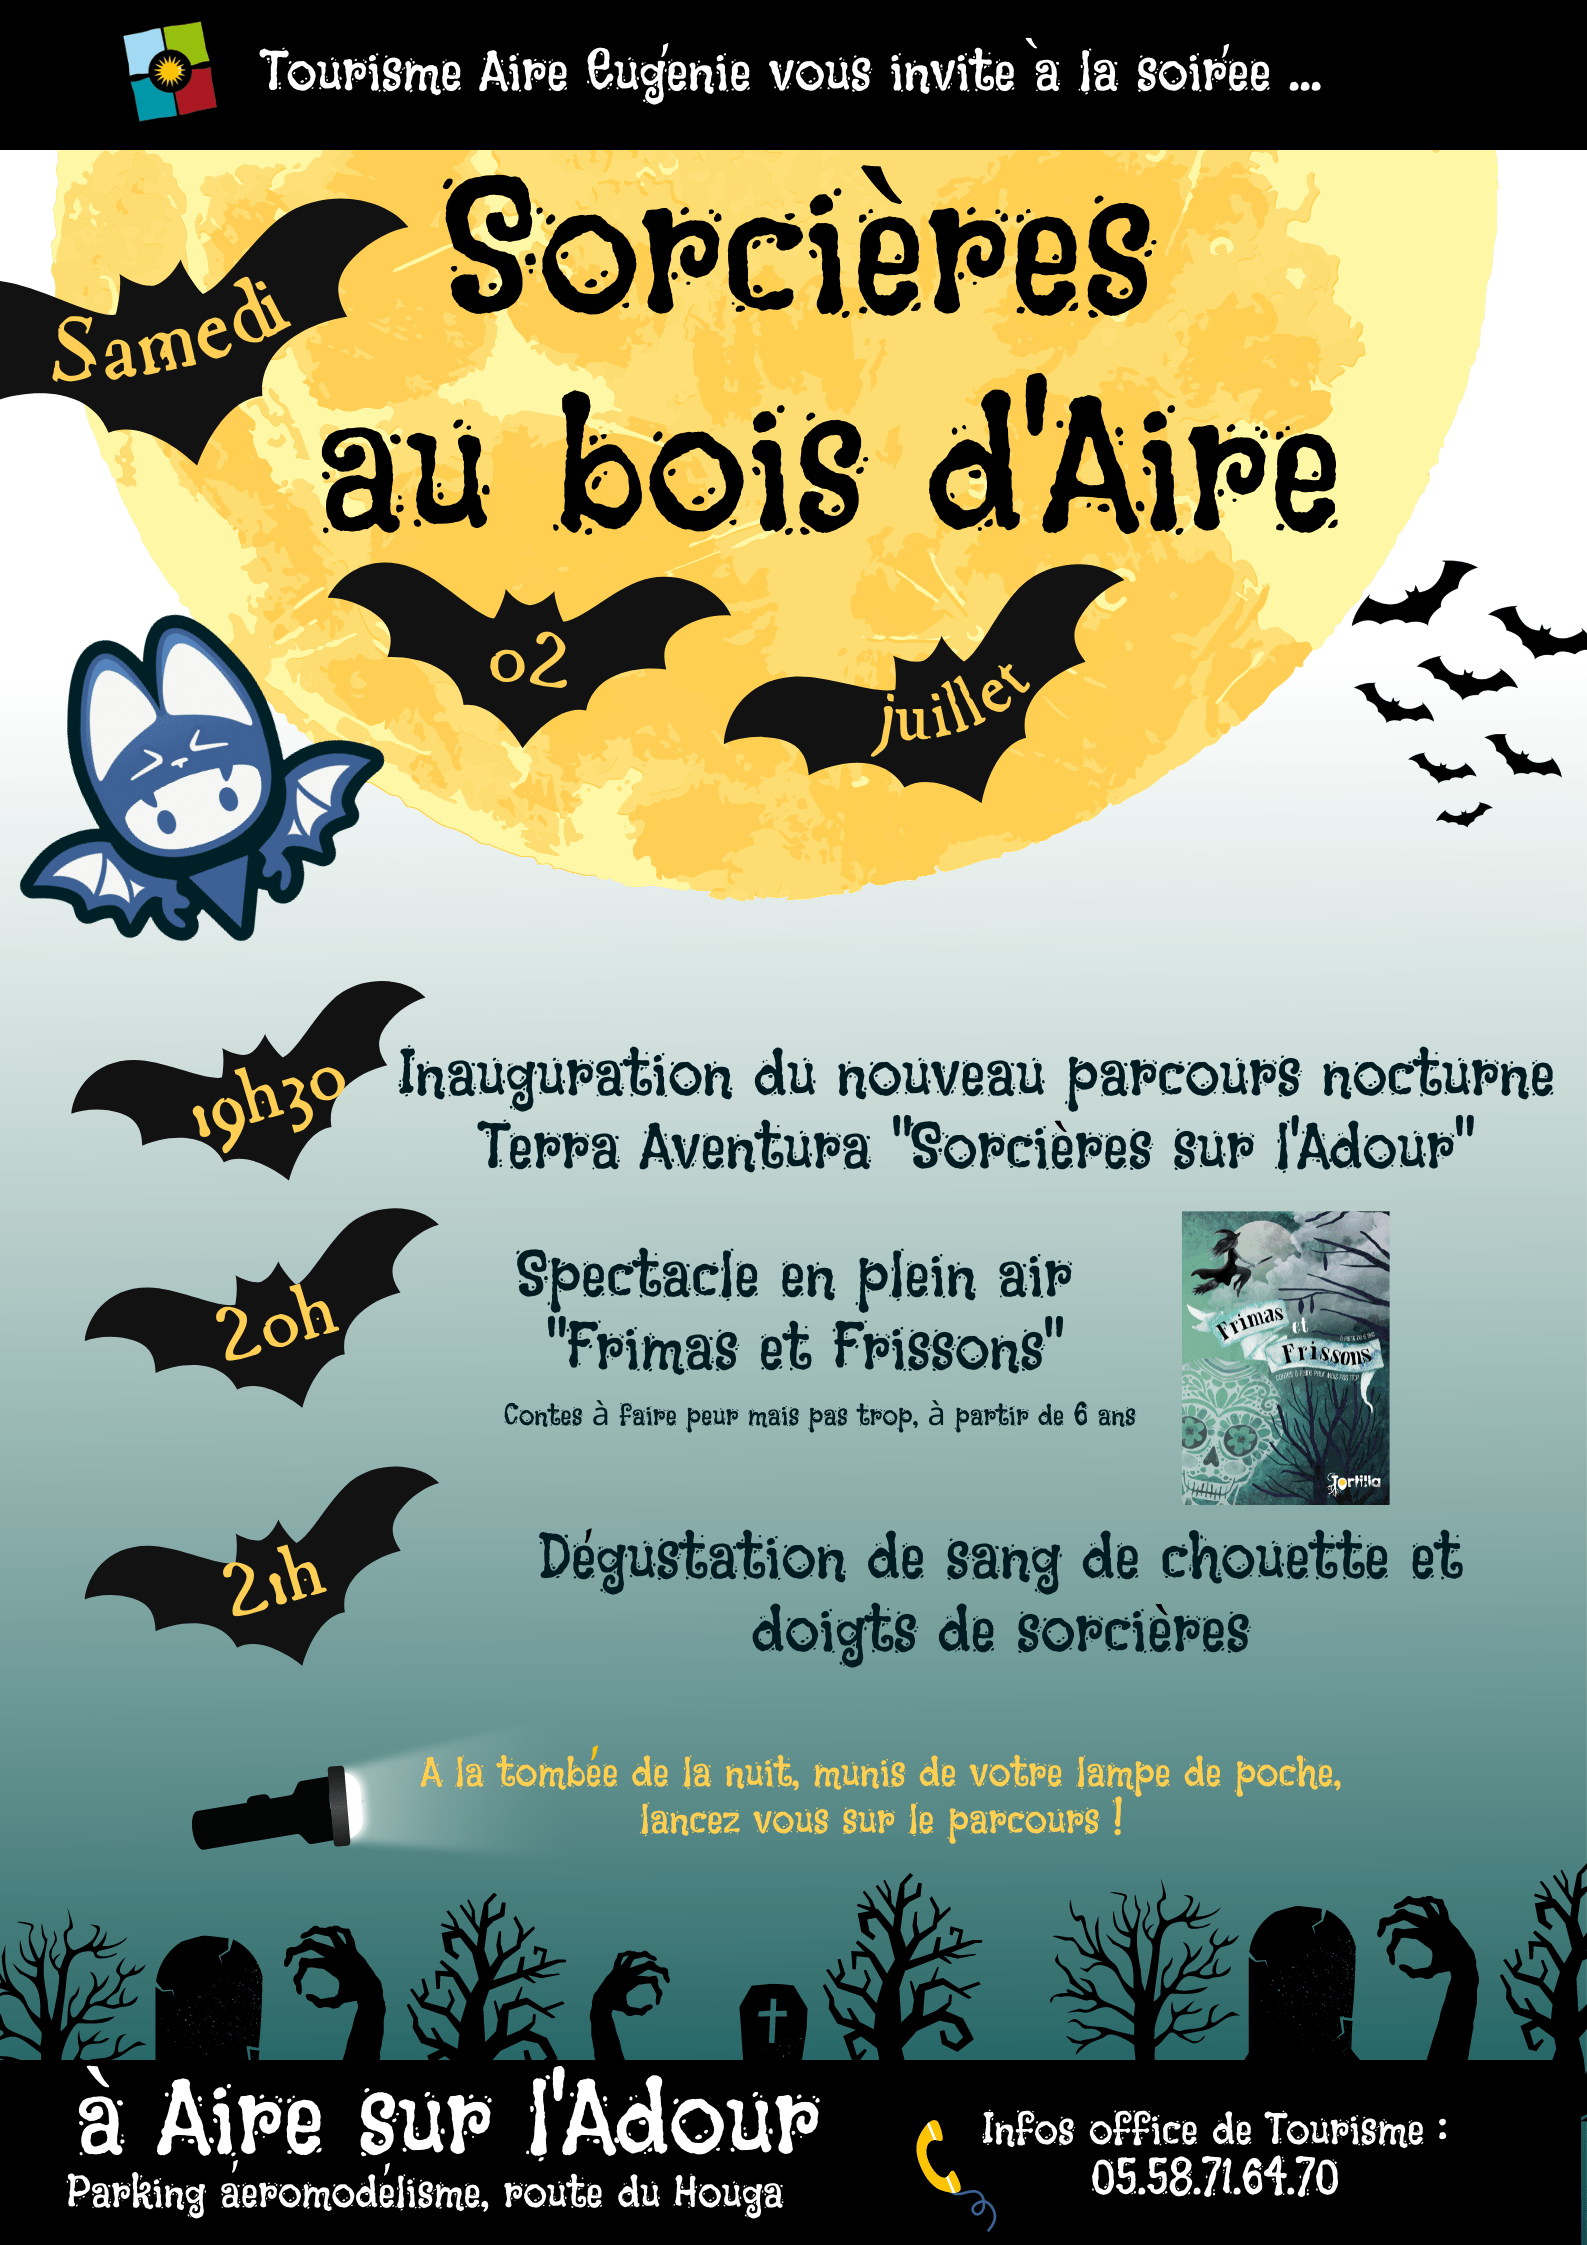 Witches in the Bois dAire Aire sur lAdour Aire sur lAdour Saturday July 2